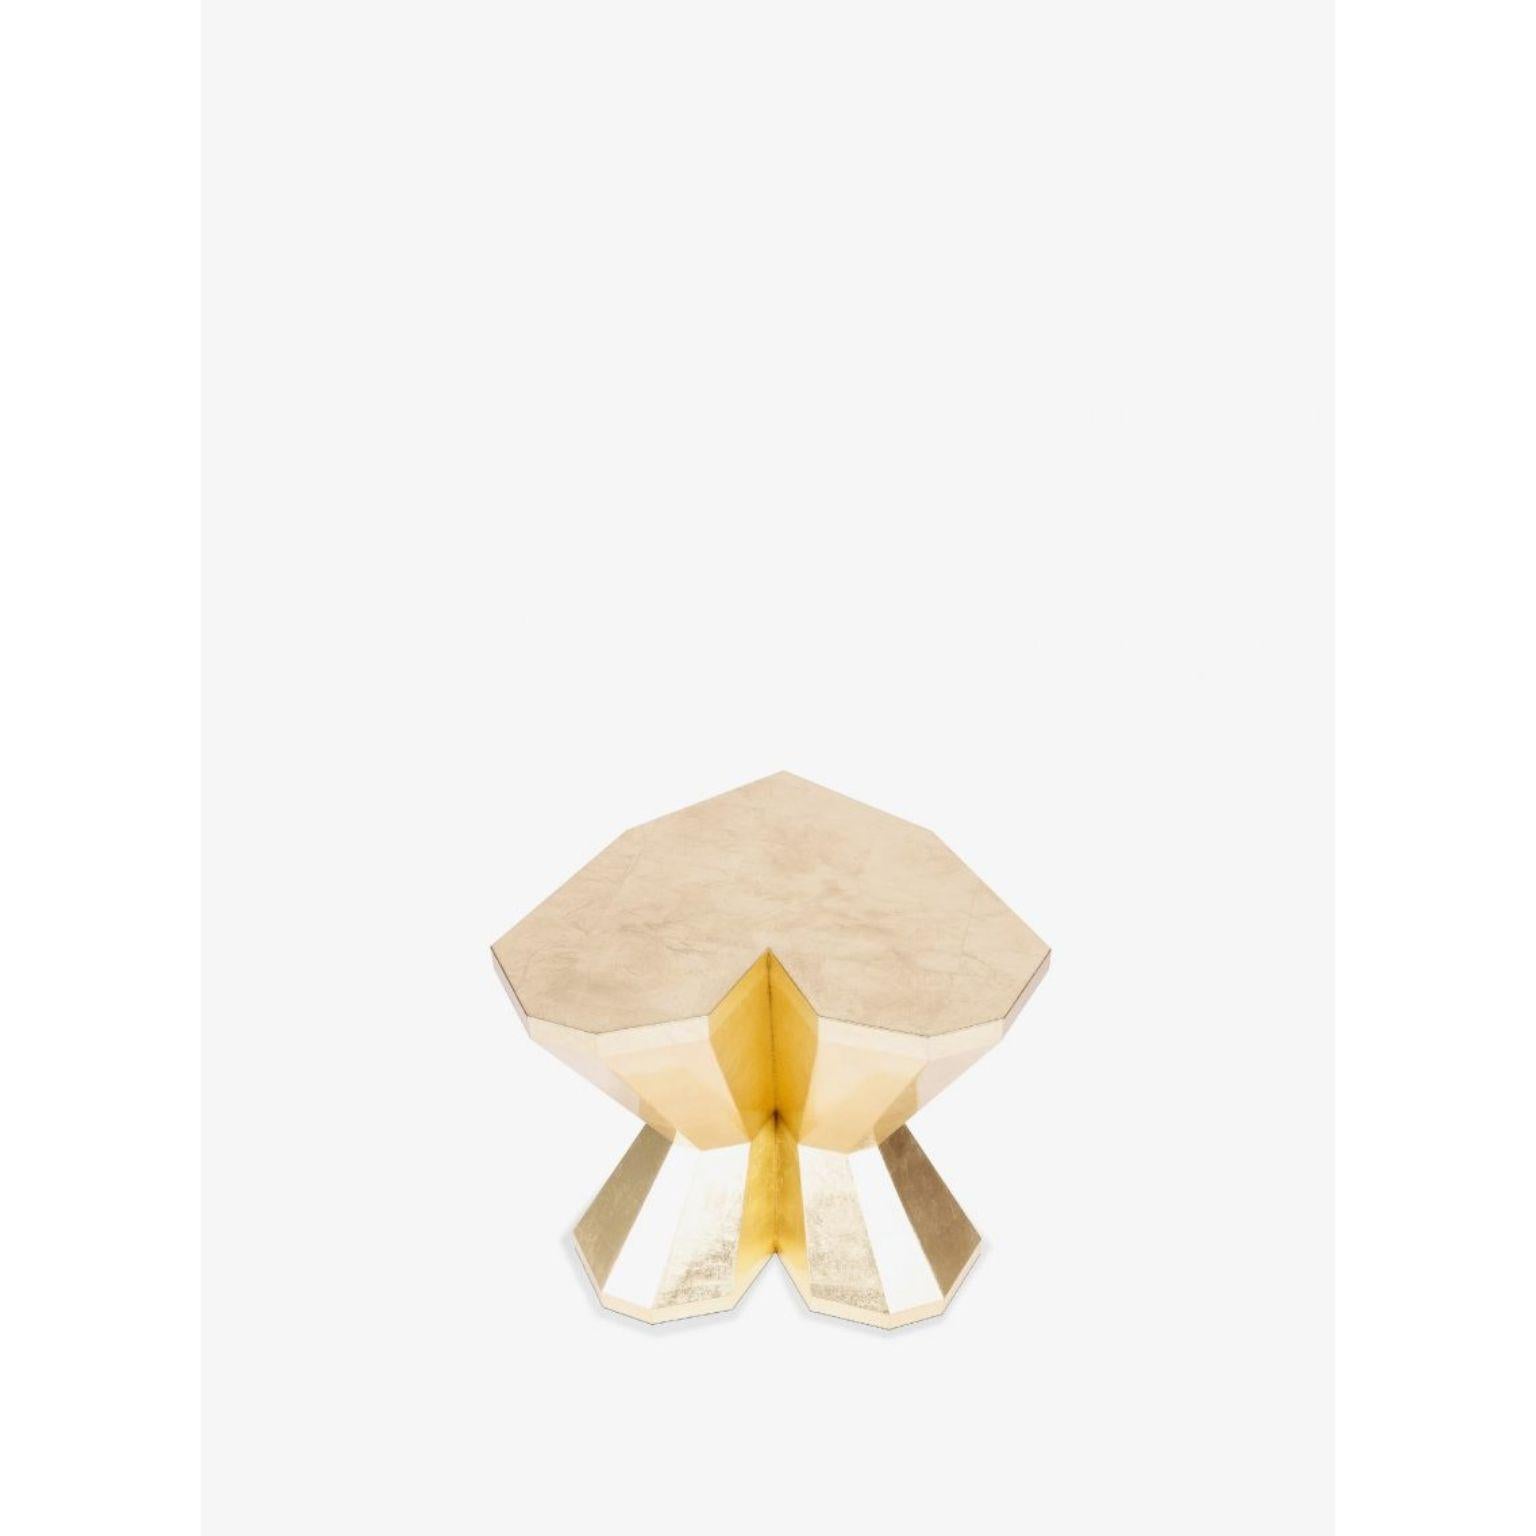 Petite table Queen Heart par Royal Stranger
Dimensions : L 60 x D 50 x H 50 cm
MATERIAL : Feuille d'or avec finition brillante.
Également disponibles : cuivre et feuille d'argent avec finition brillante ou mate et toutes les couleurs NCS/RAL avec